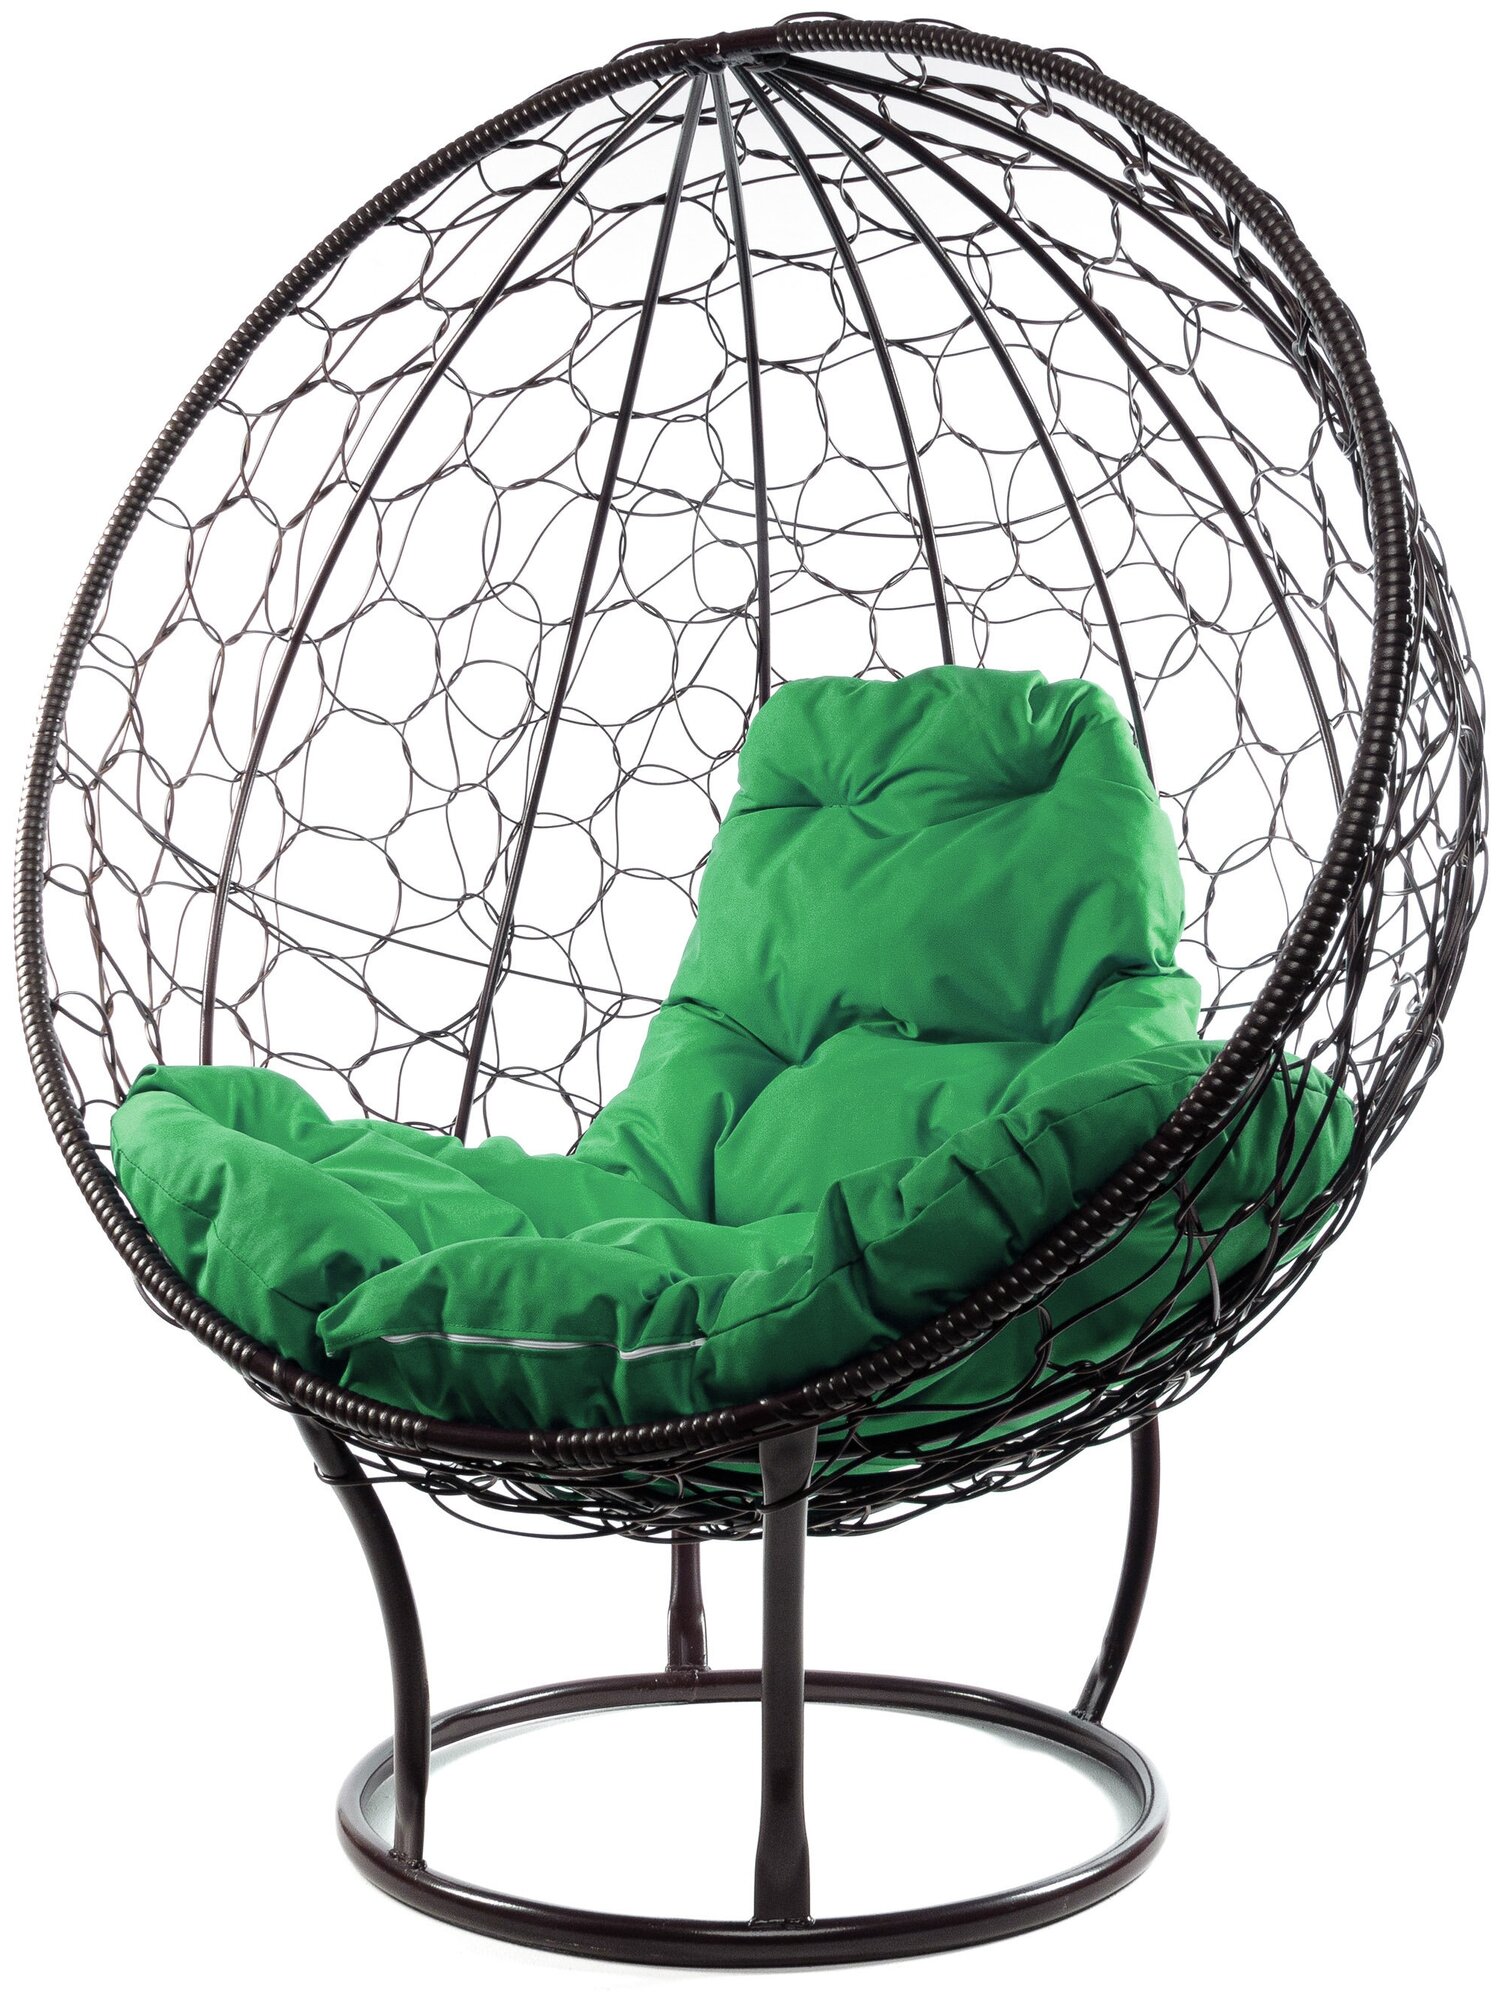 Кресло M-Group круг на подставке ротанг коричневый, зелёная подушка - фотография № 14